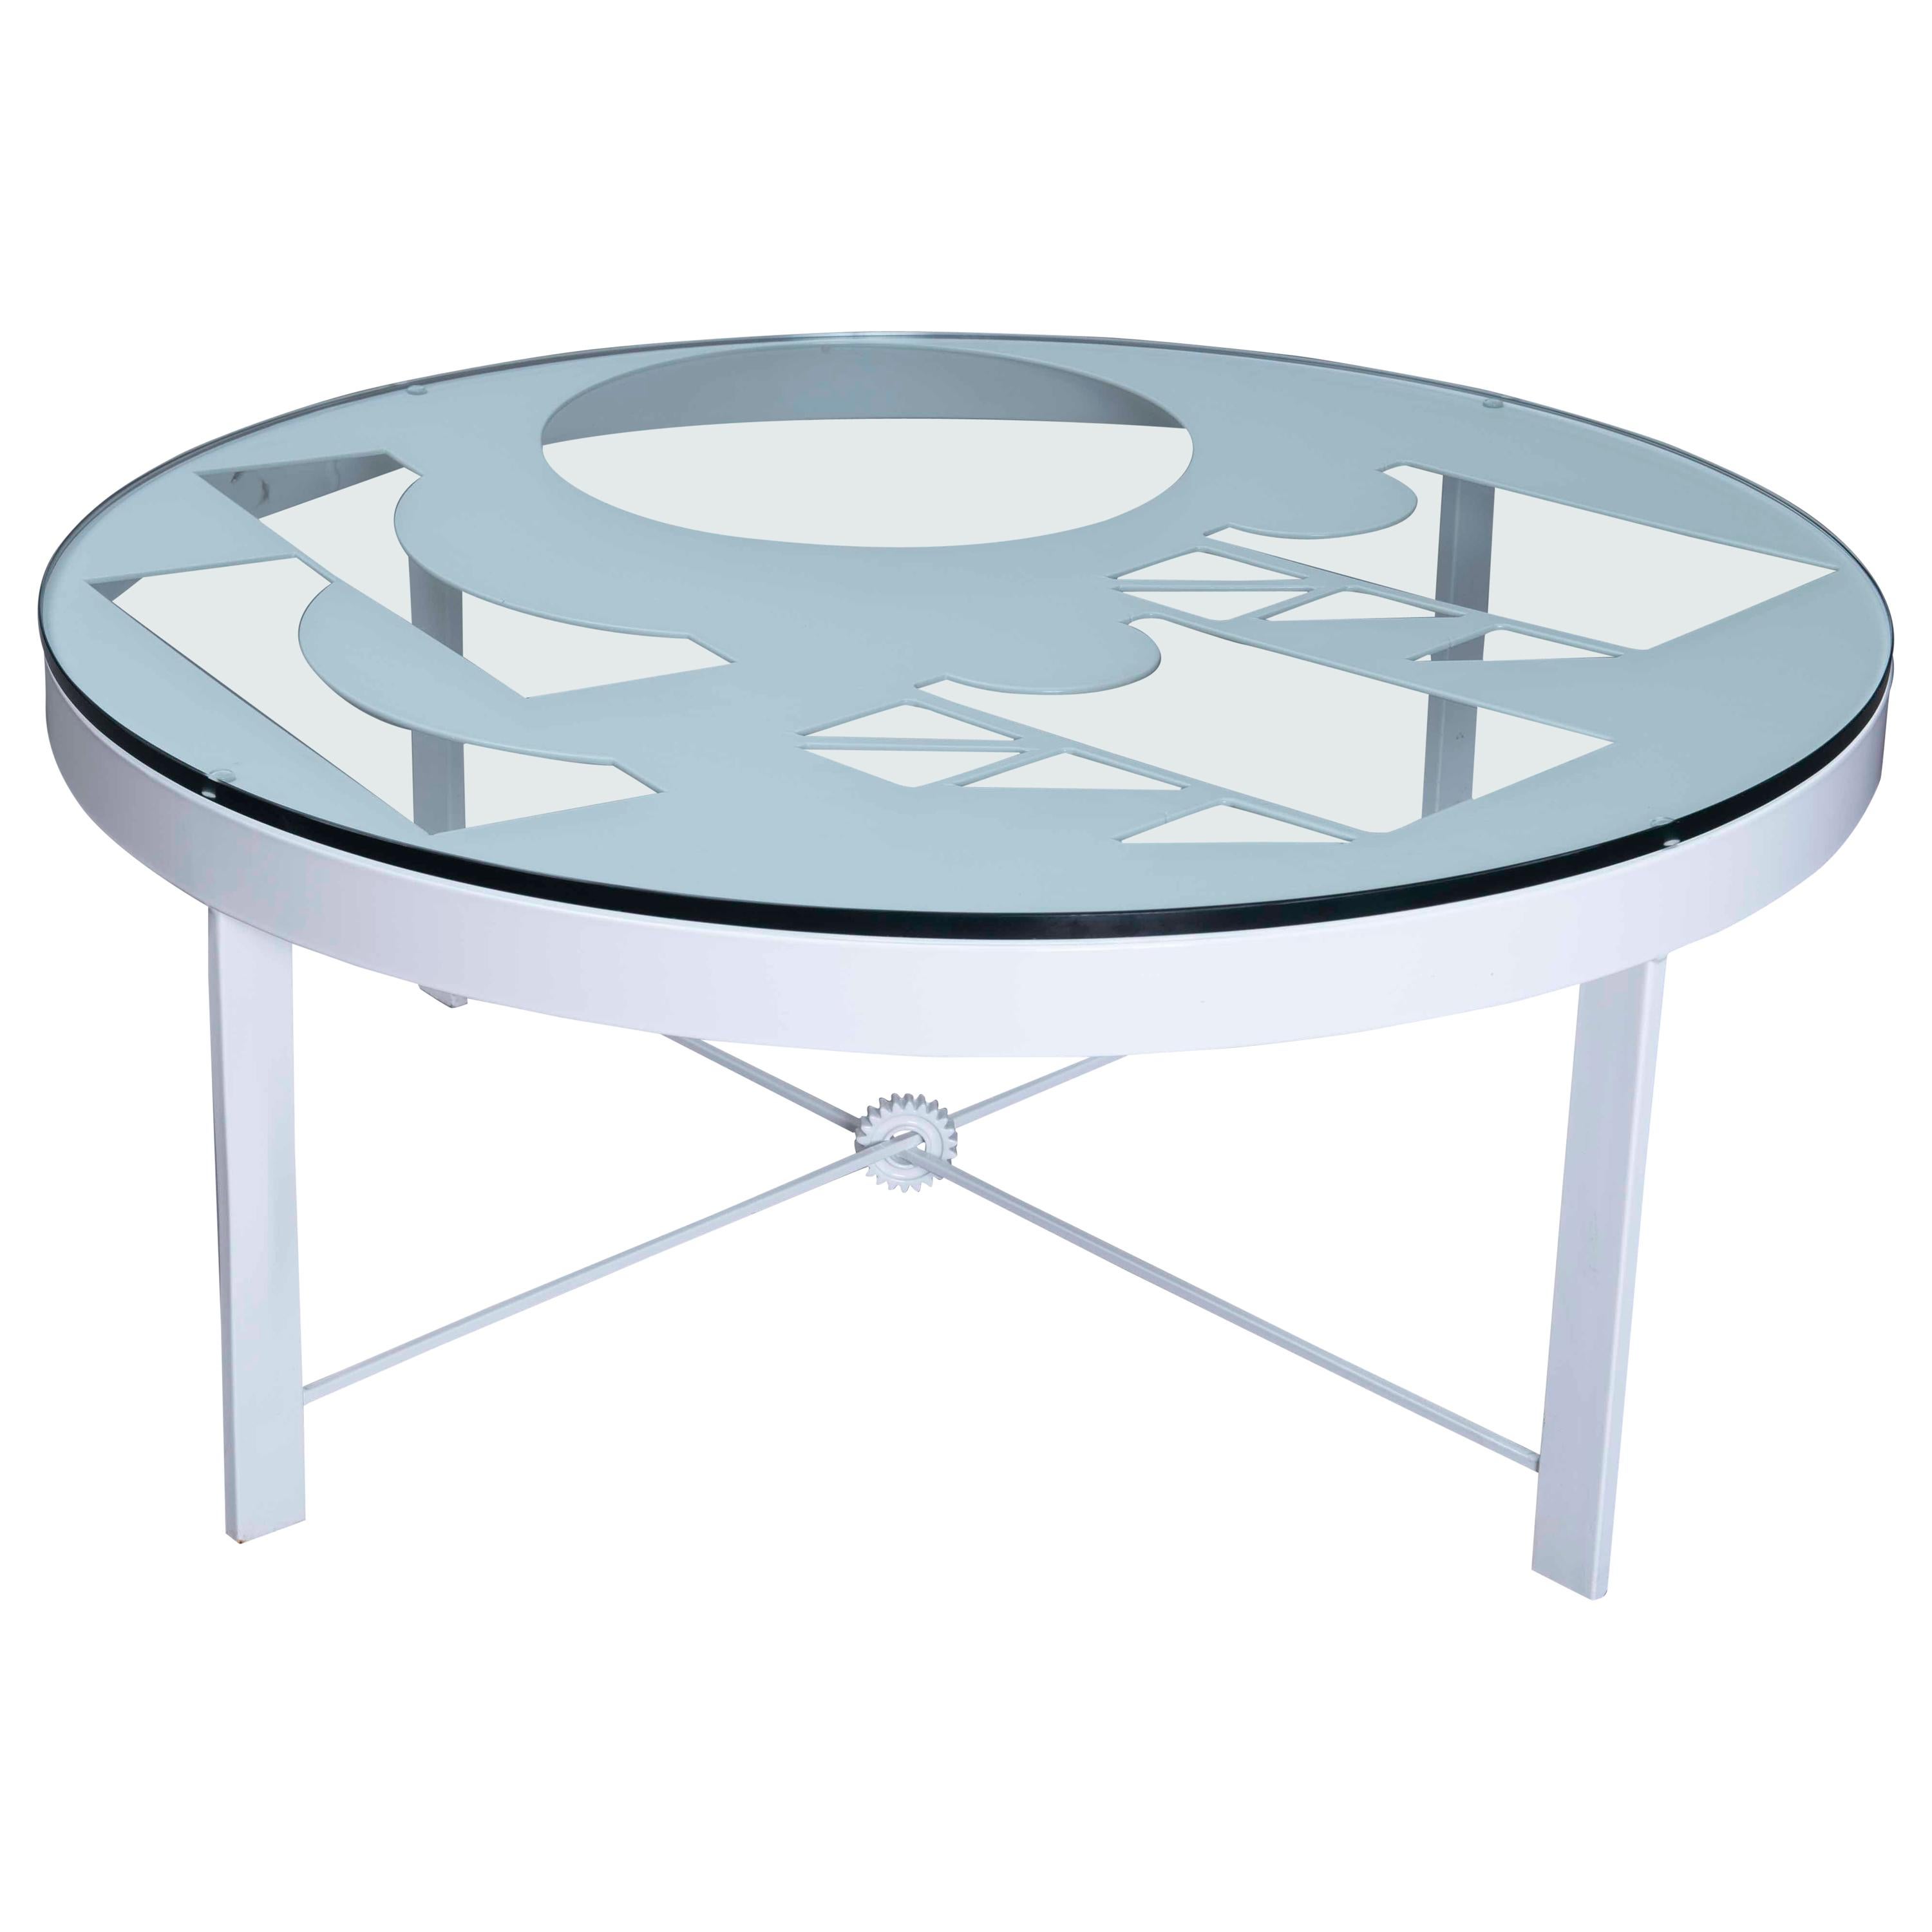 Table basse moderne ronde et minimaliste en métal soudé et verre blanc, unique en son genre